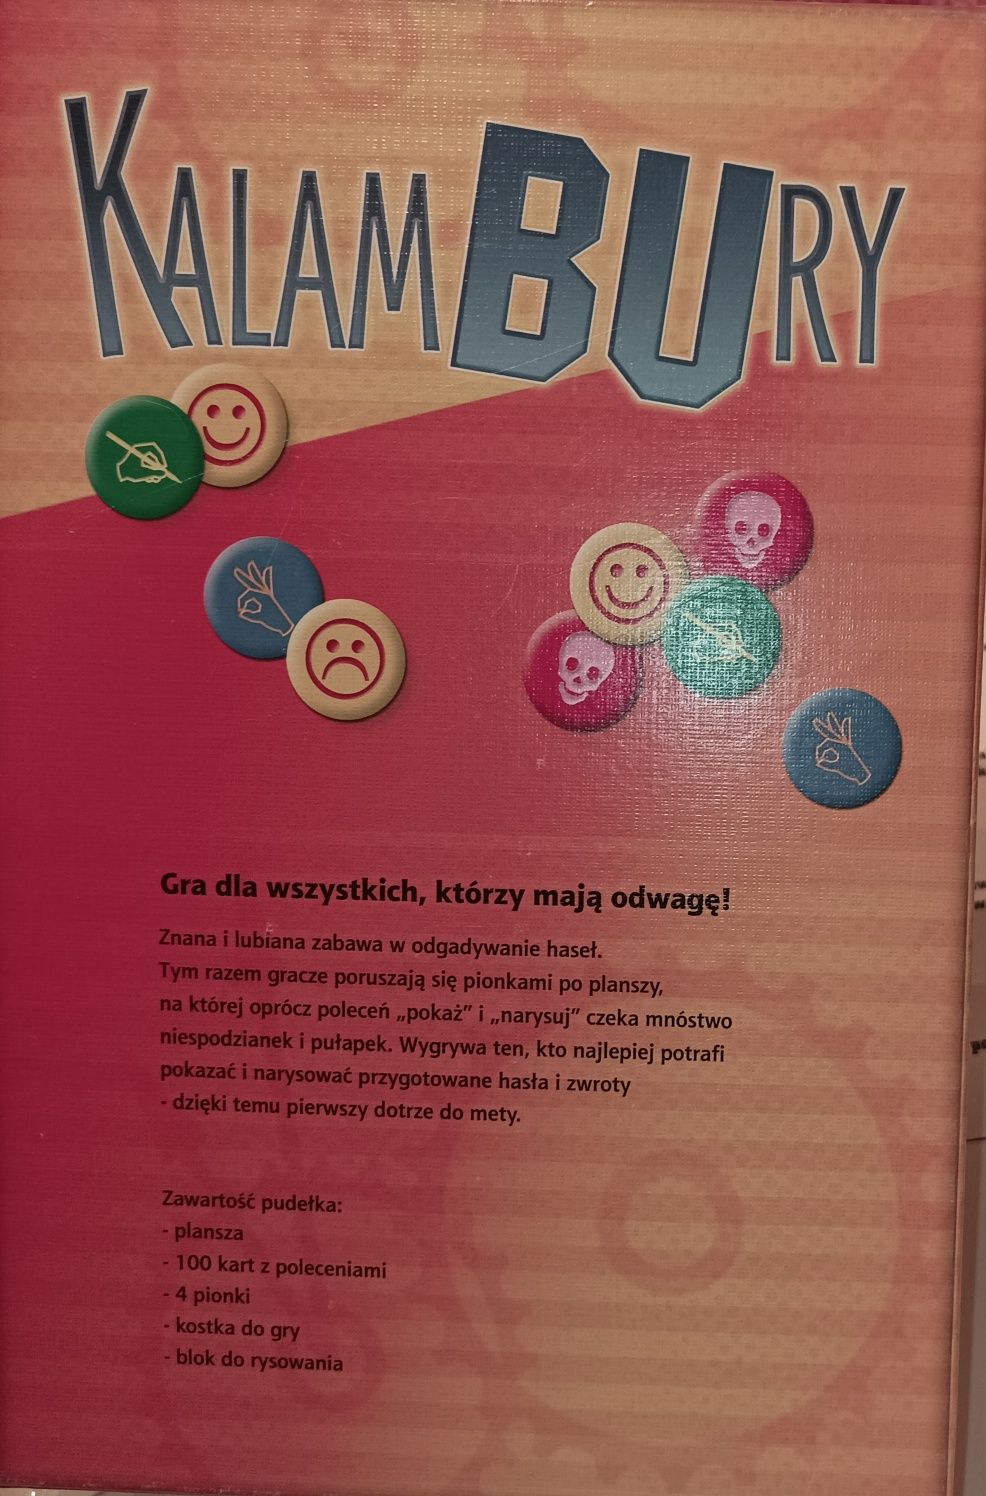 Kalambury gra dla wszystkich